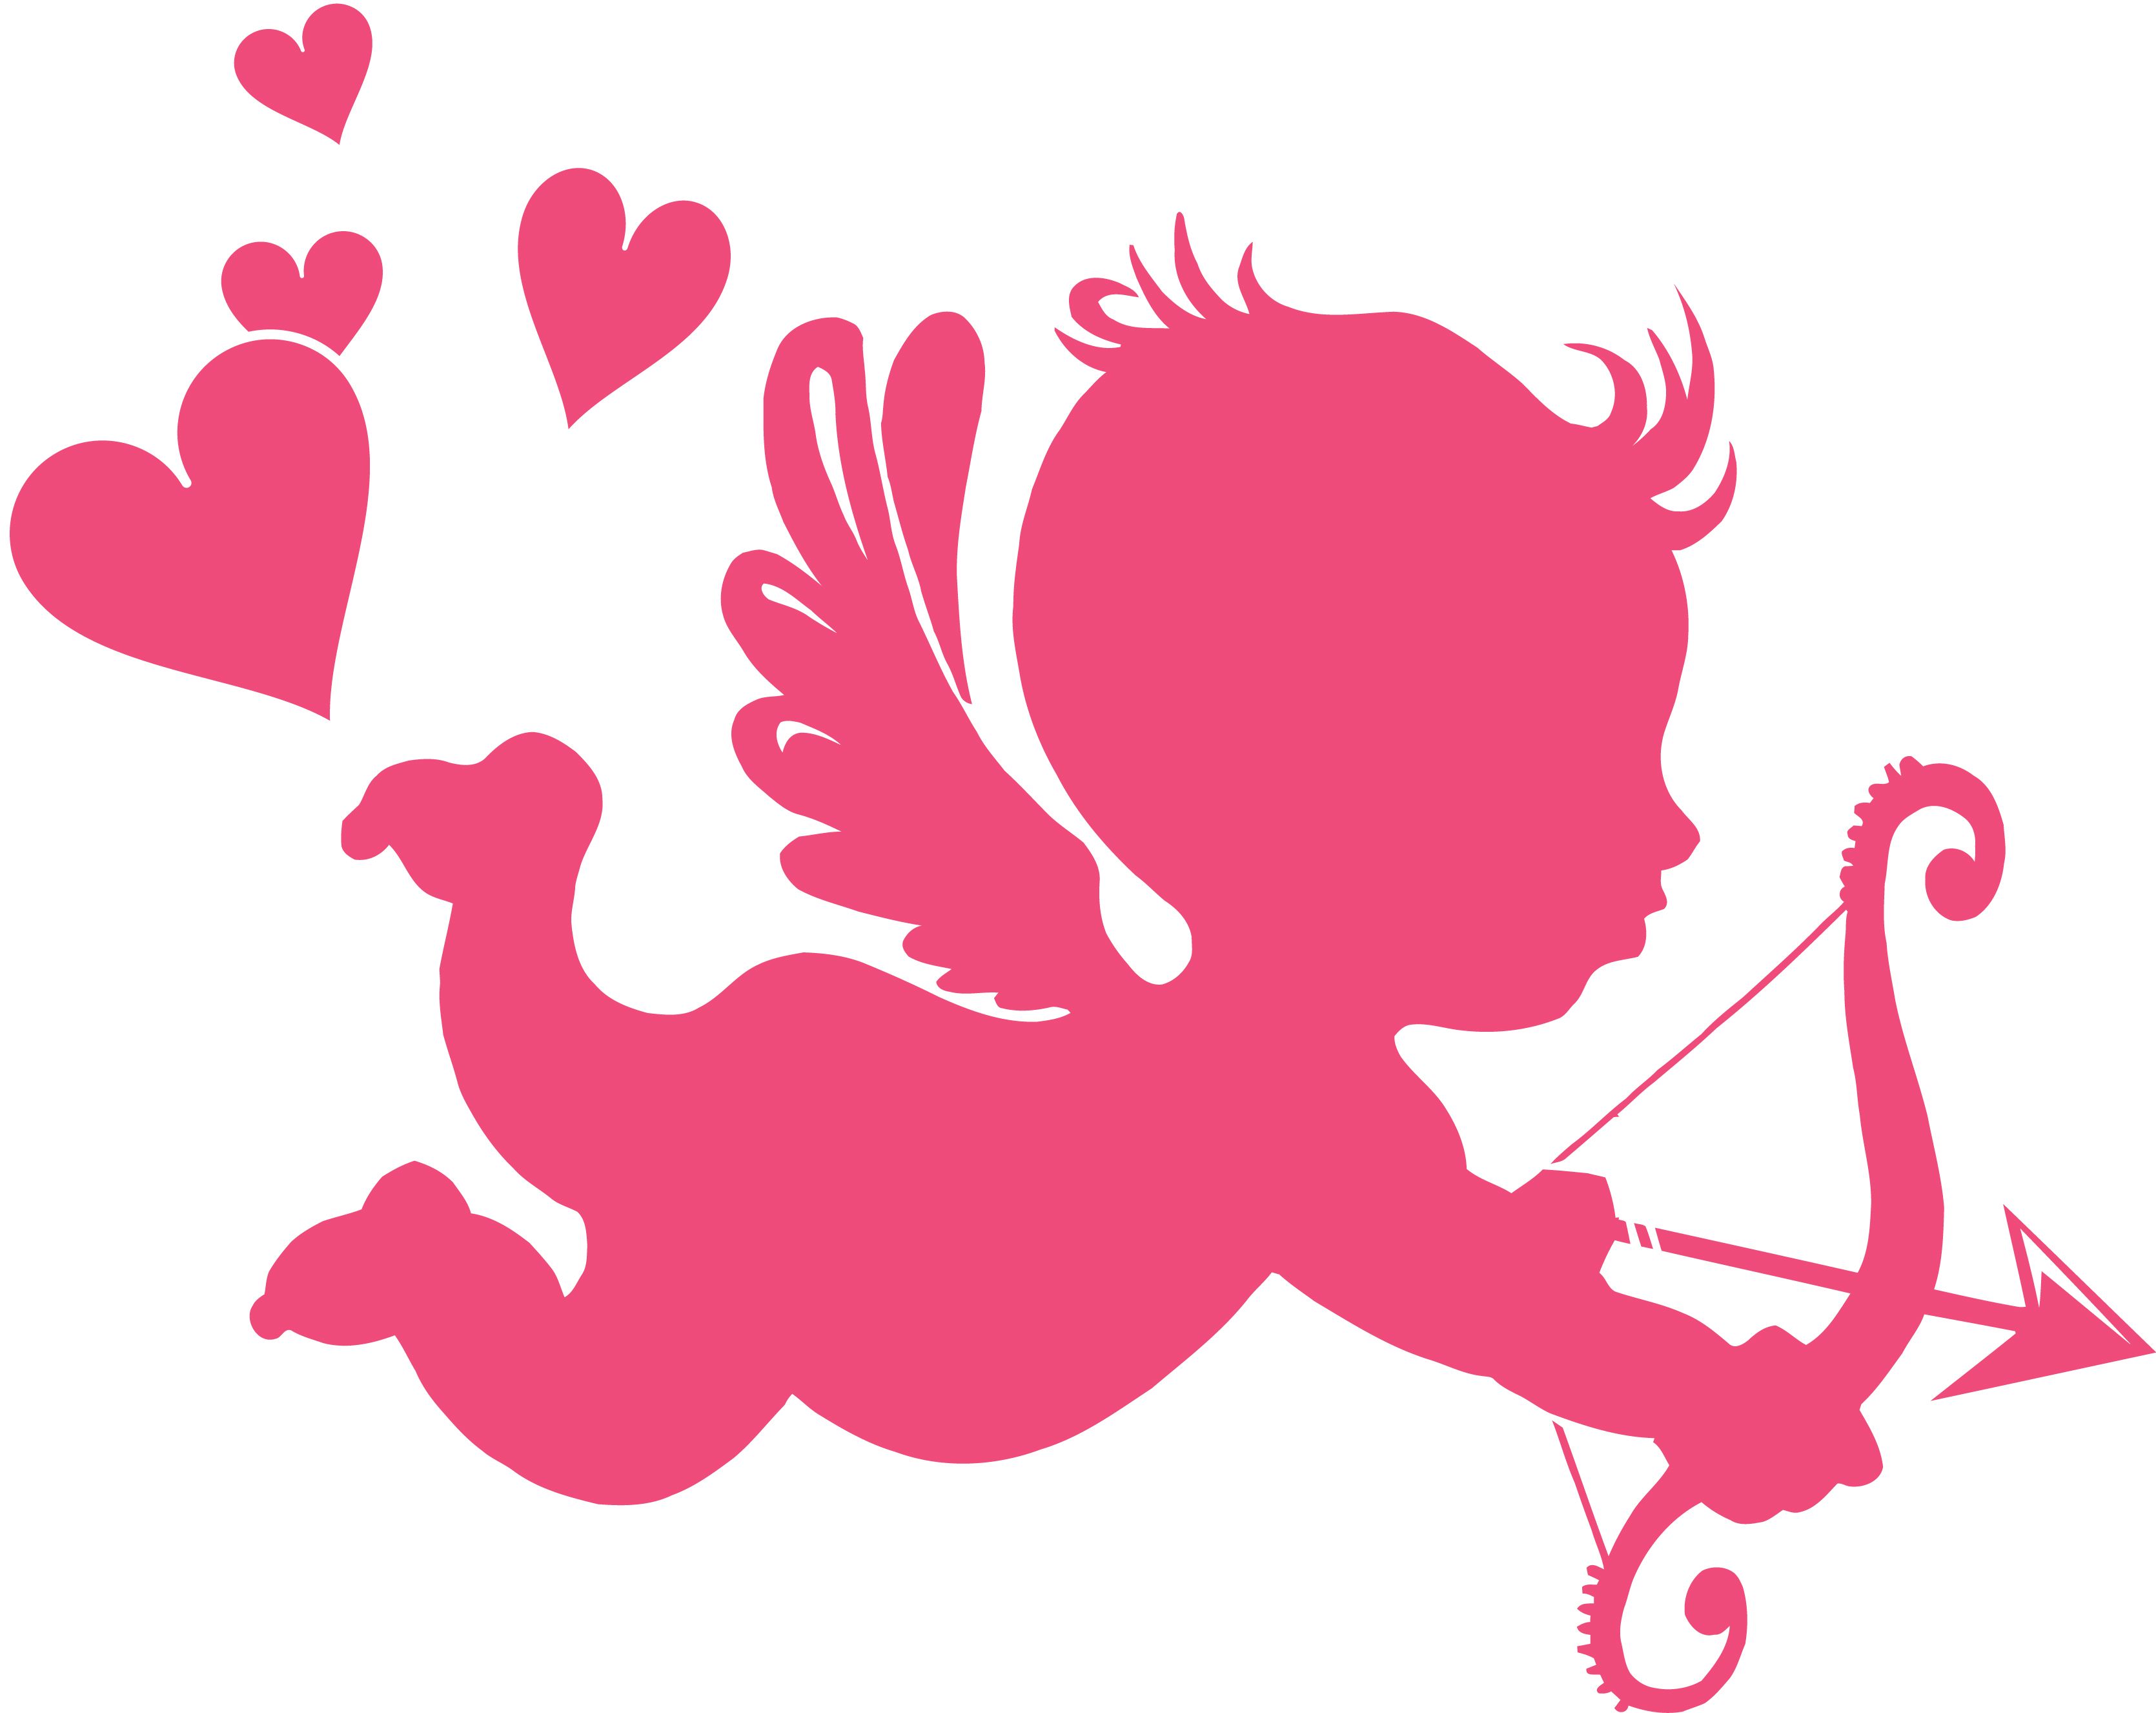 Cupid Valentine Day Background. Valentine Wallpaper, Victorian Valentine Wallpaper and Dogs Valentine Wallpaper